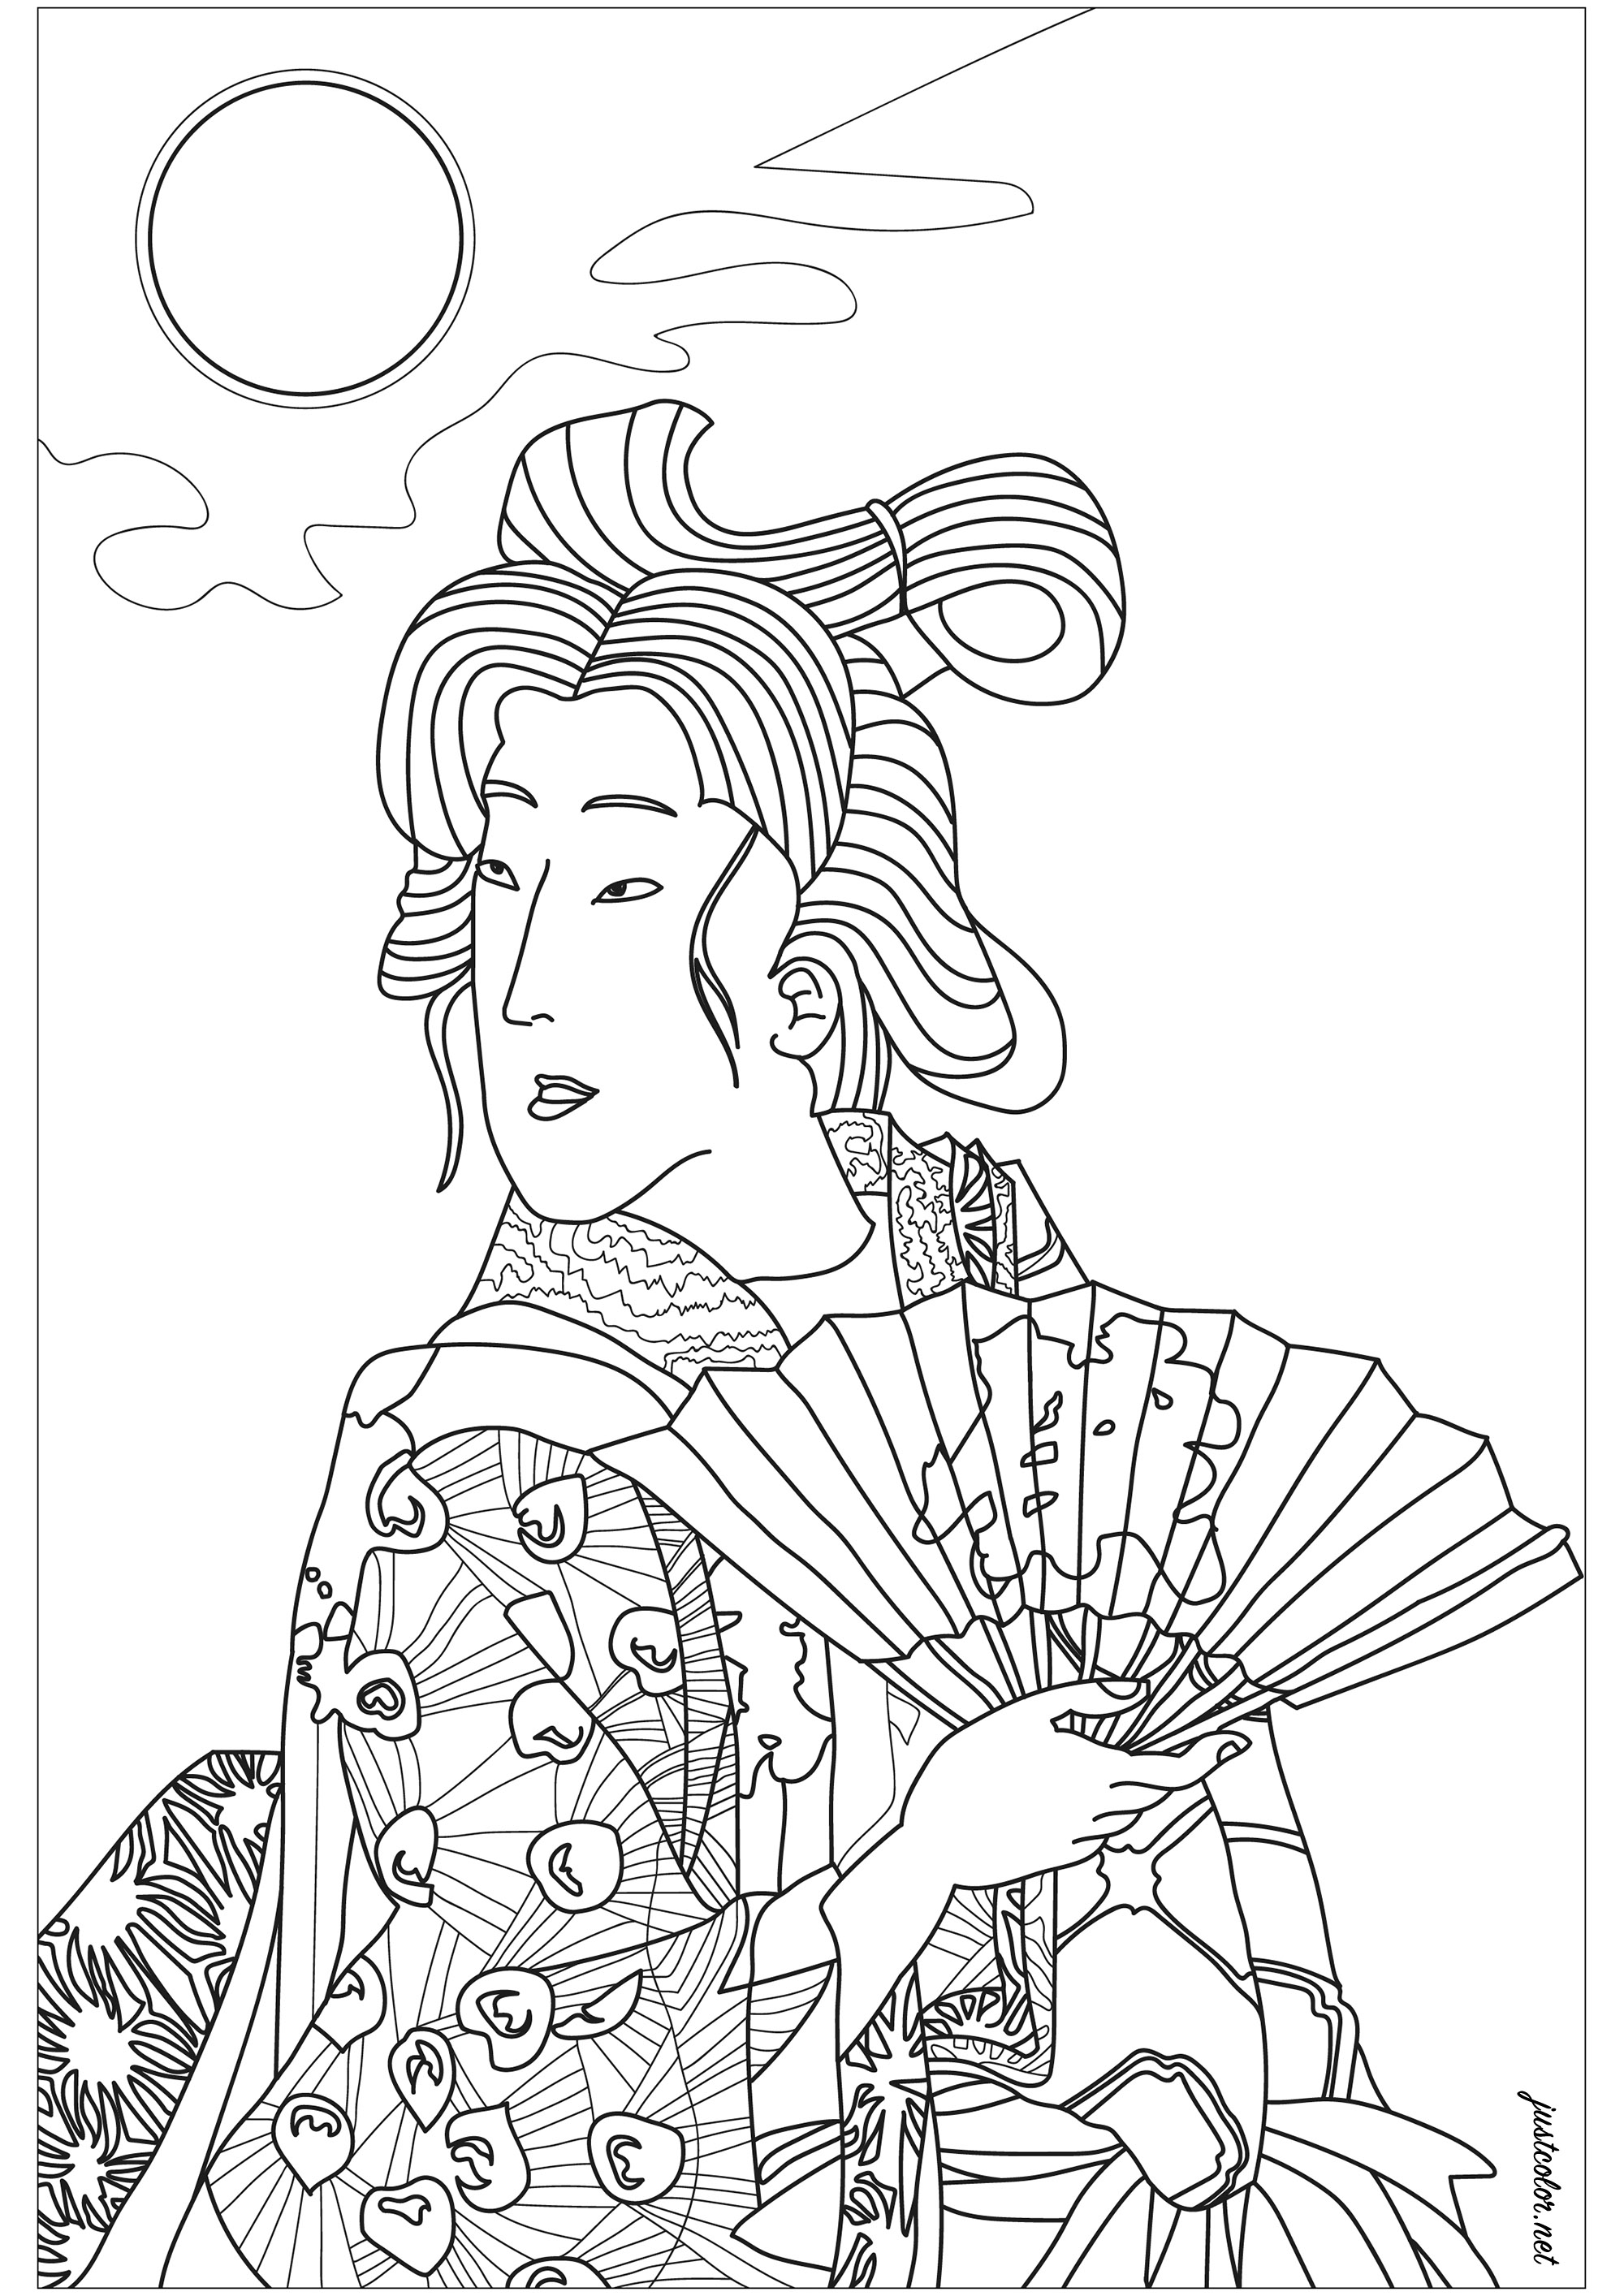 Portait d'une Geisha d'après une estampe japonaise du 19ème siècle de Yoshitoshi représentant une femme en kimono tenant son éventail sous une pleine lune